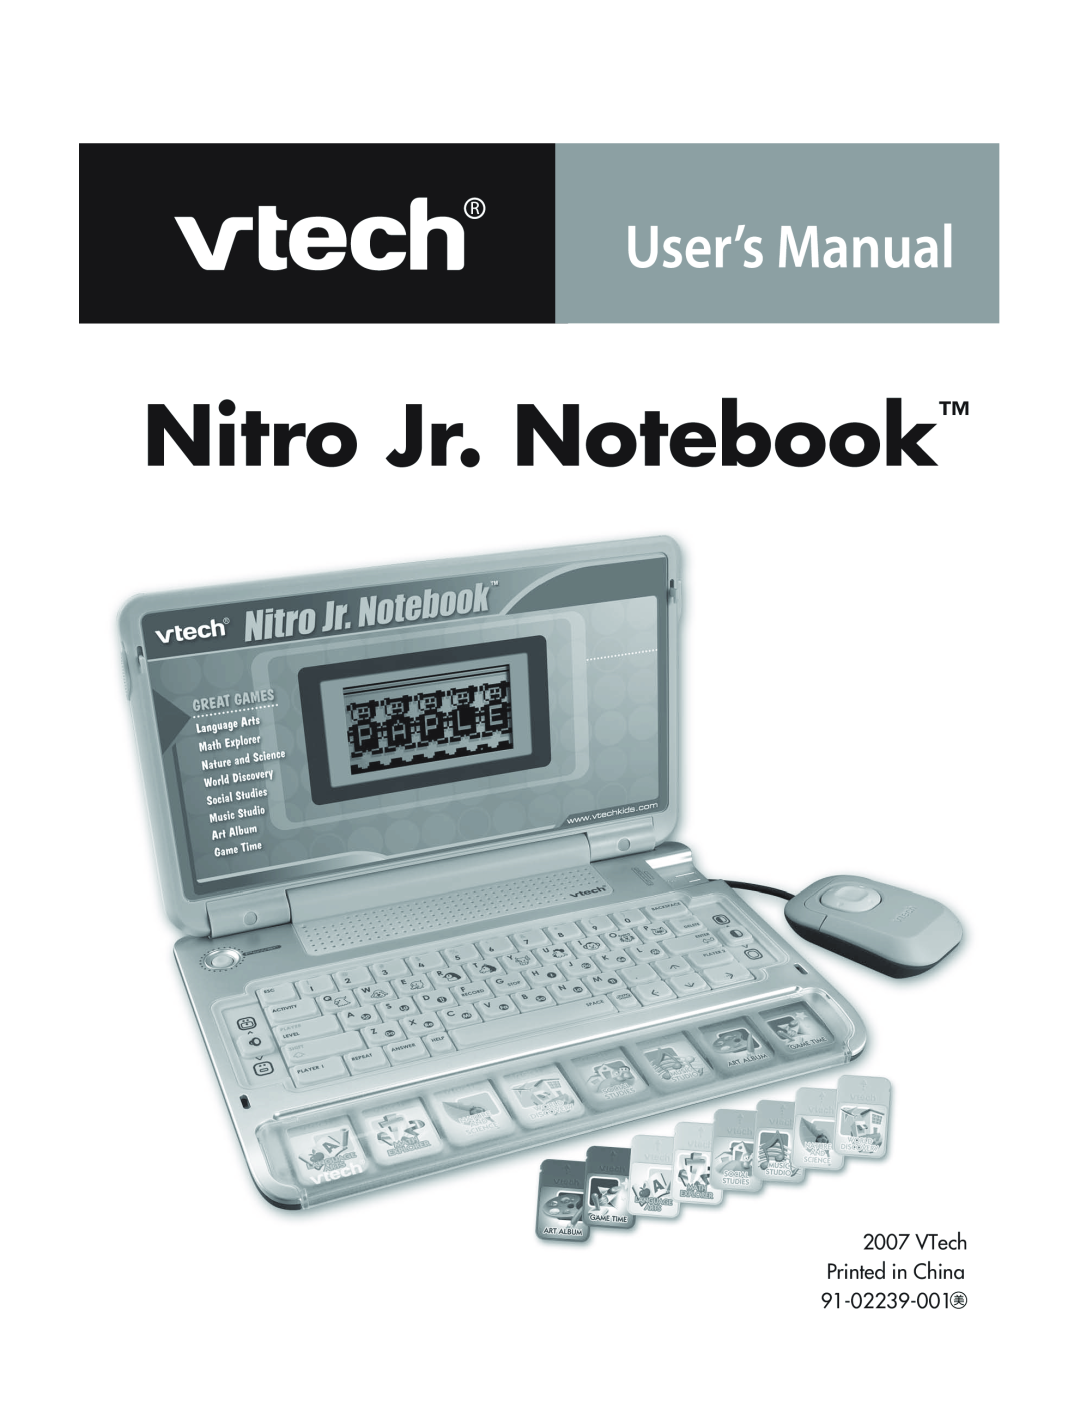 VTech 91-02239-001 manual Nitro Jr. Notebook 